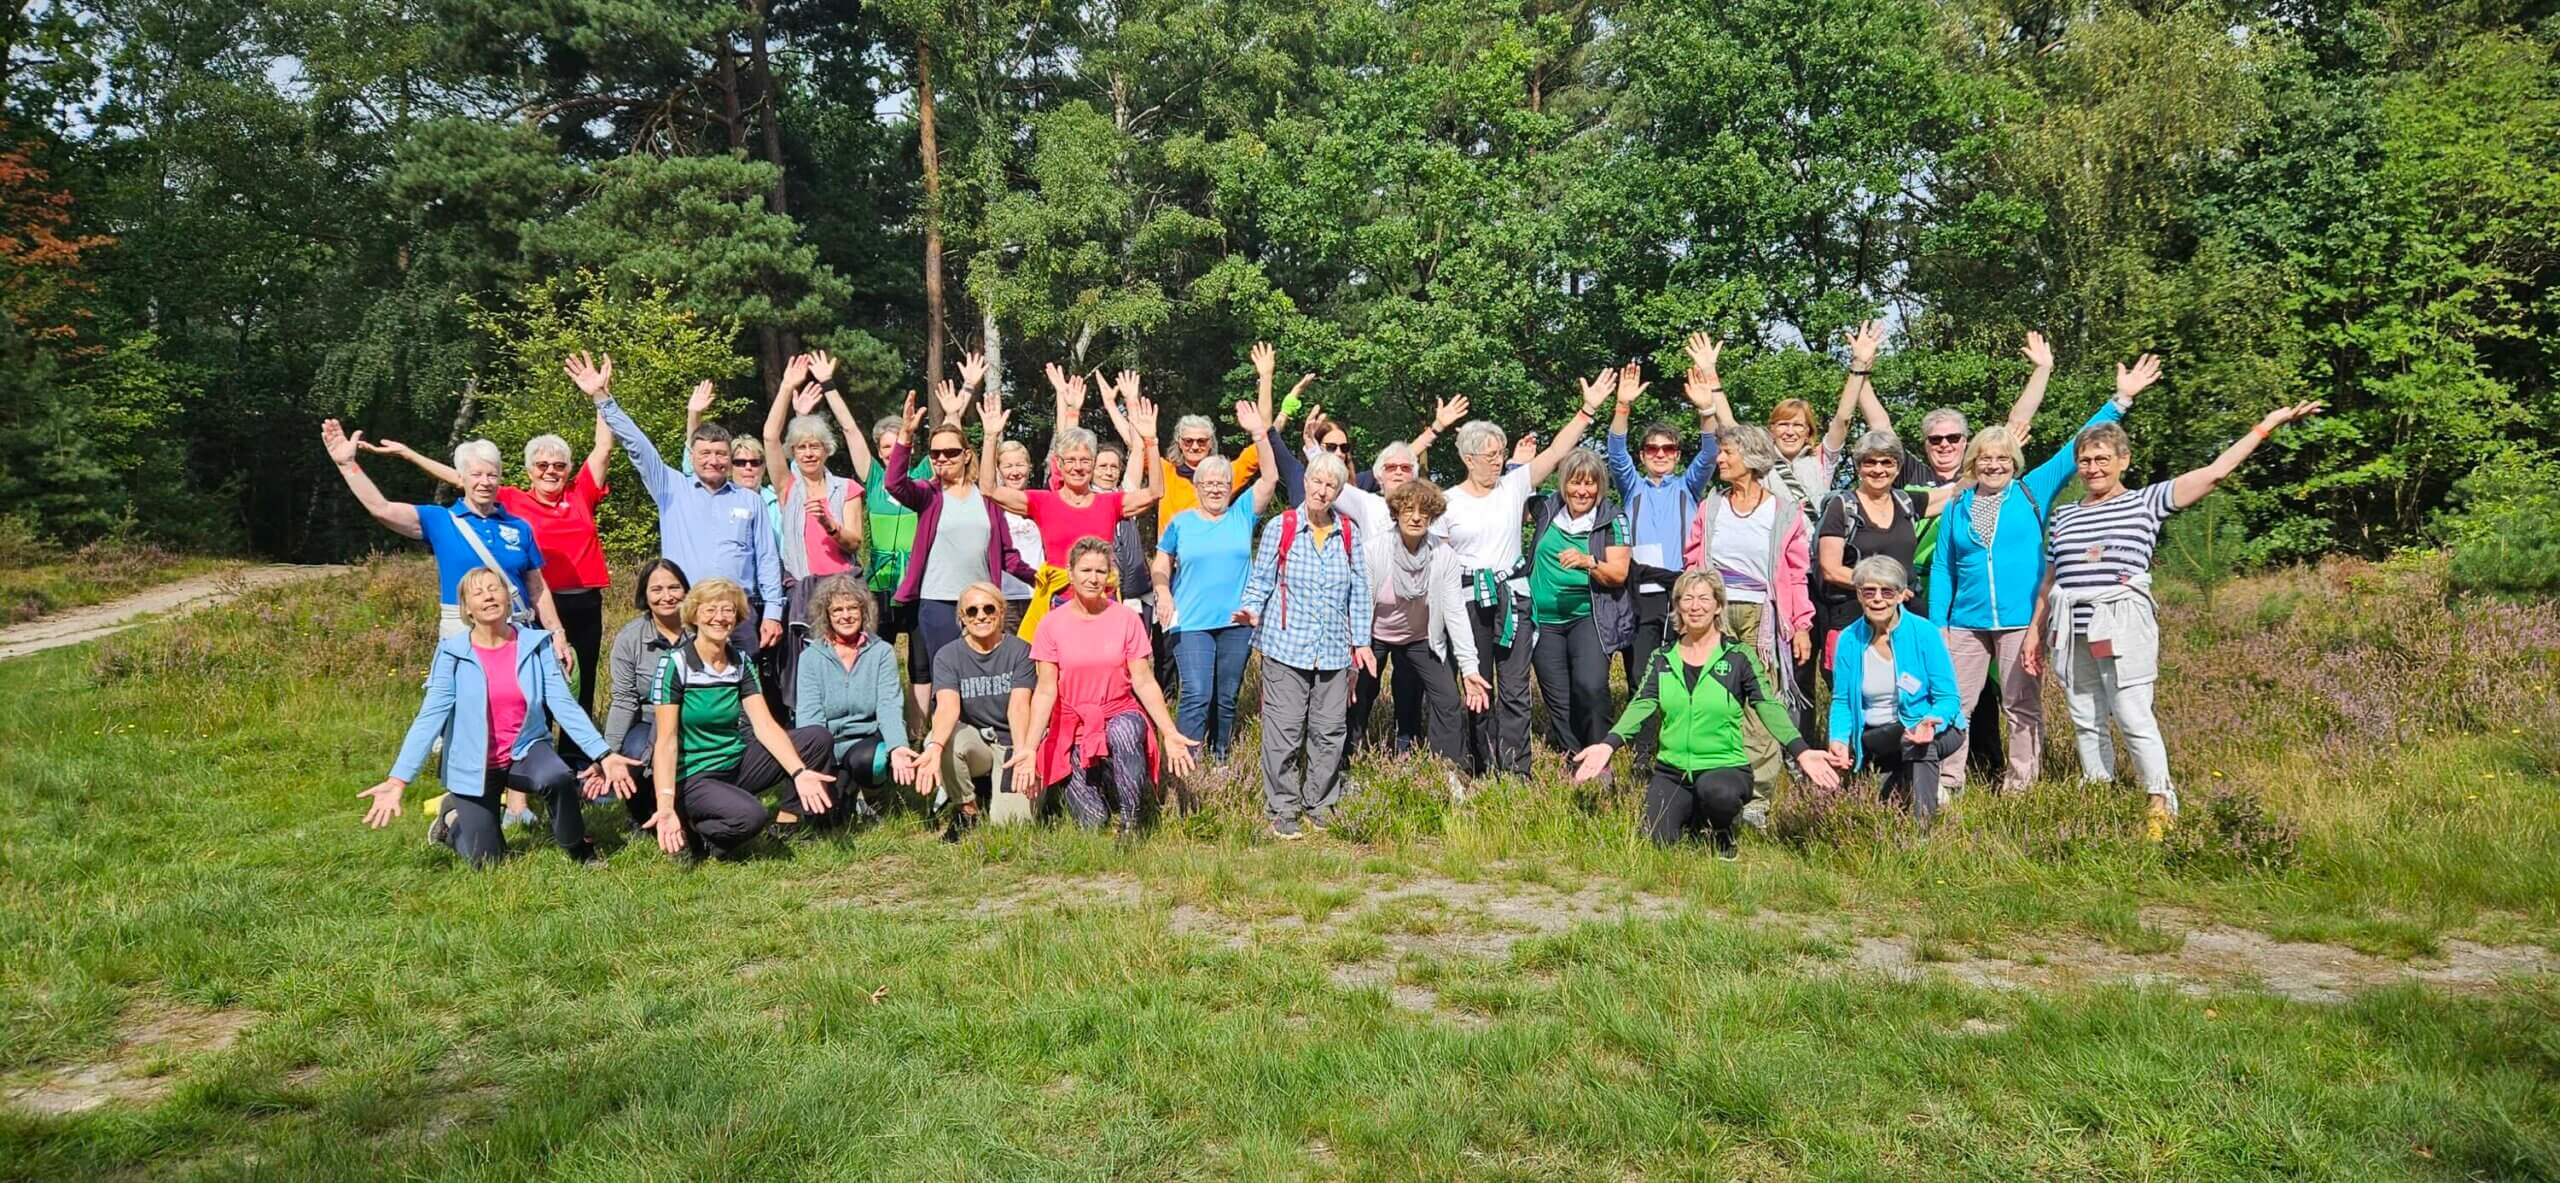 Gruppenfoto der Teilnehmenden des Neugrabener Events während der Wanderung in der Fischbeker Heide.